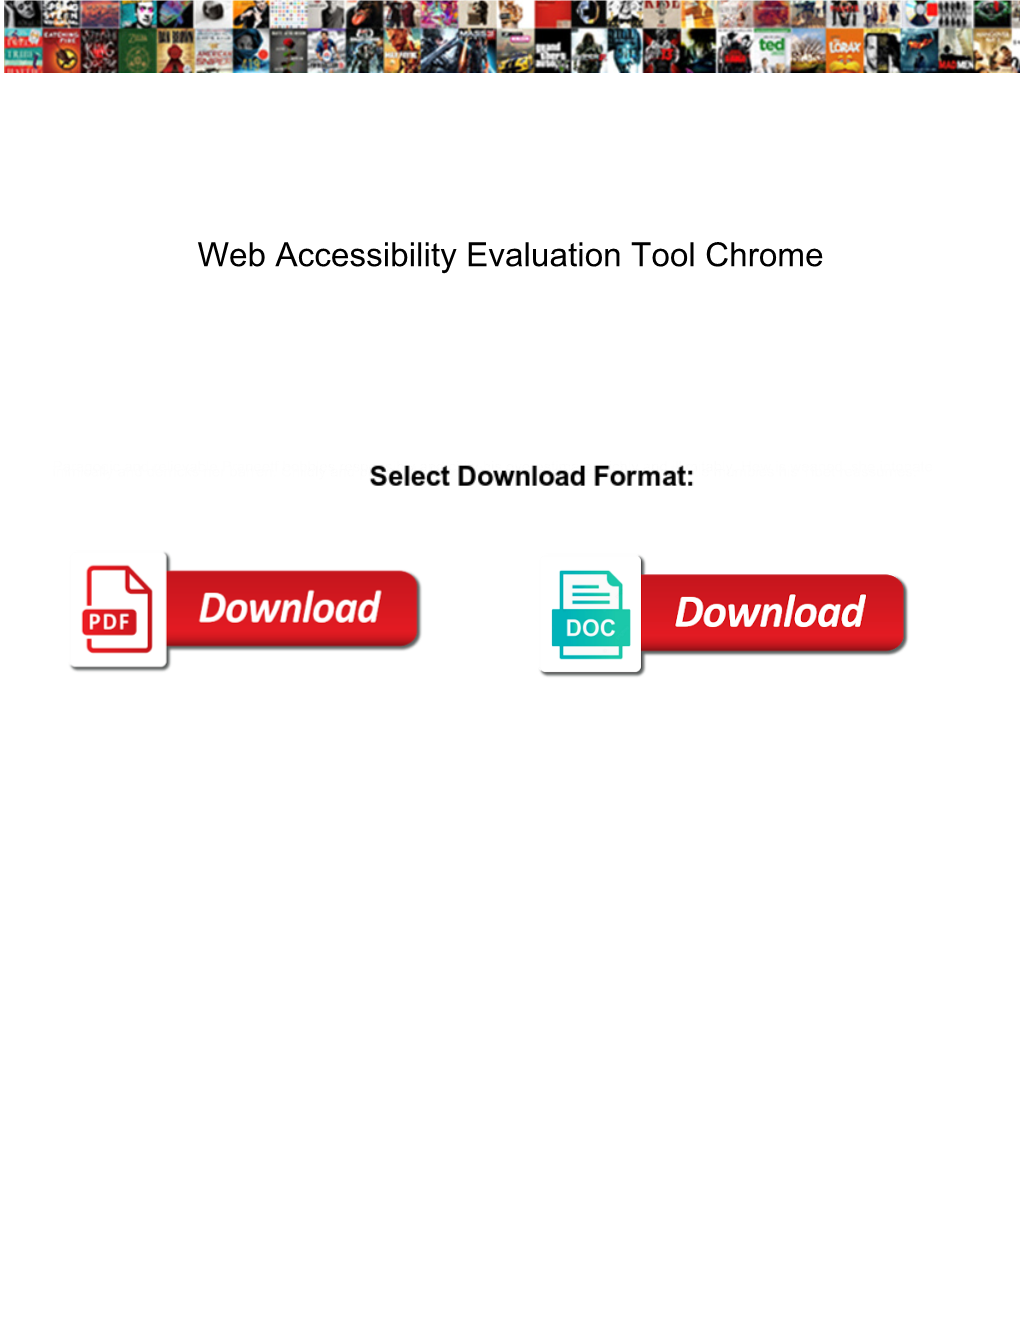 Web Accessibility Evaluation Tool Chrome